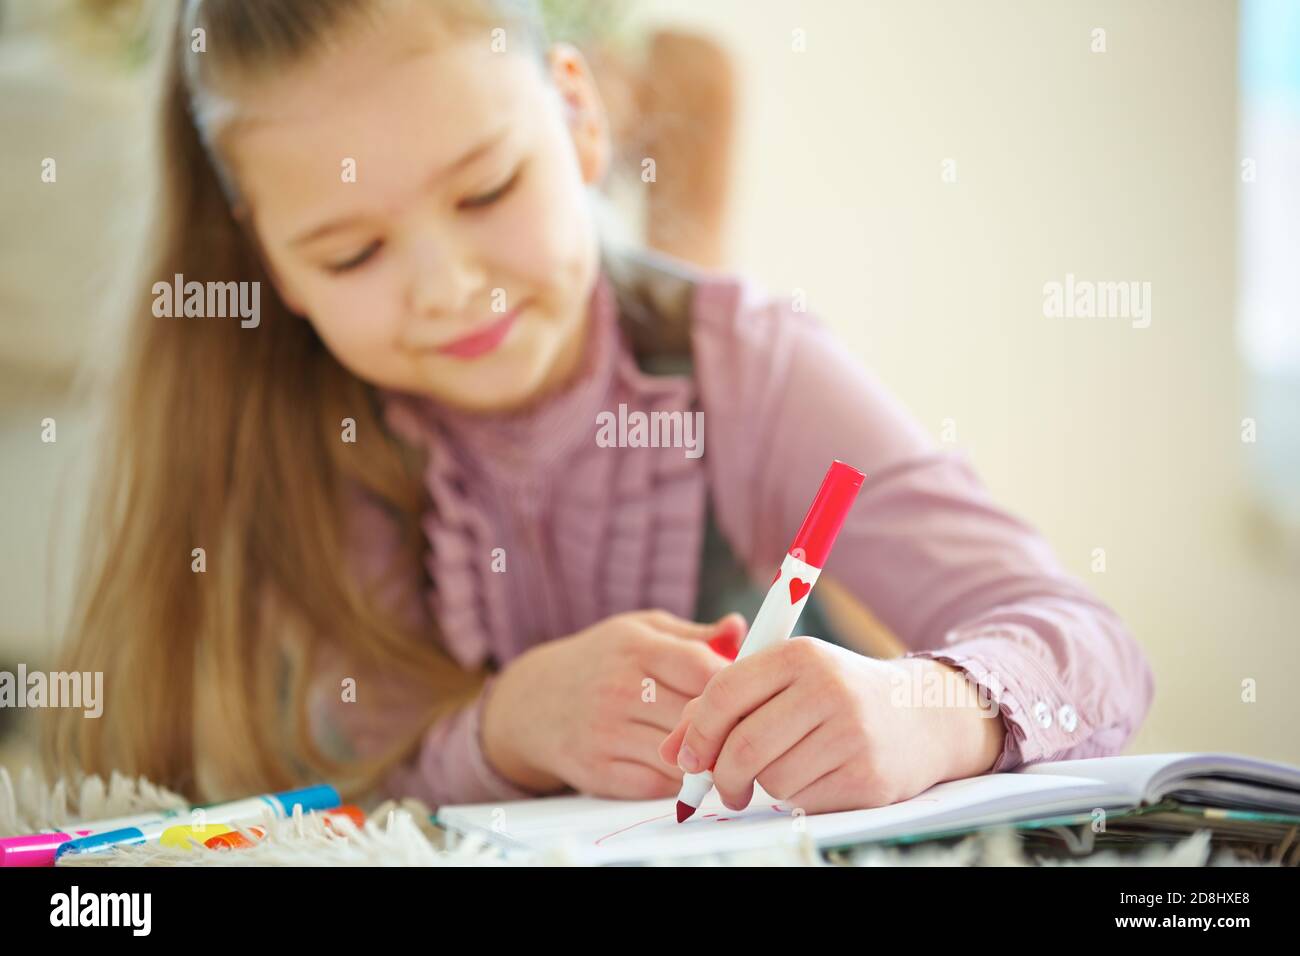 L'enfant tient le stylo rouge à la main pour peindre Banque D'Images